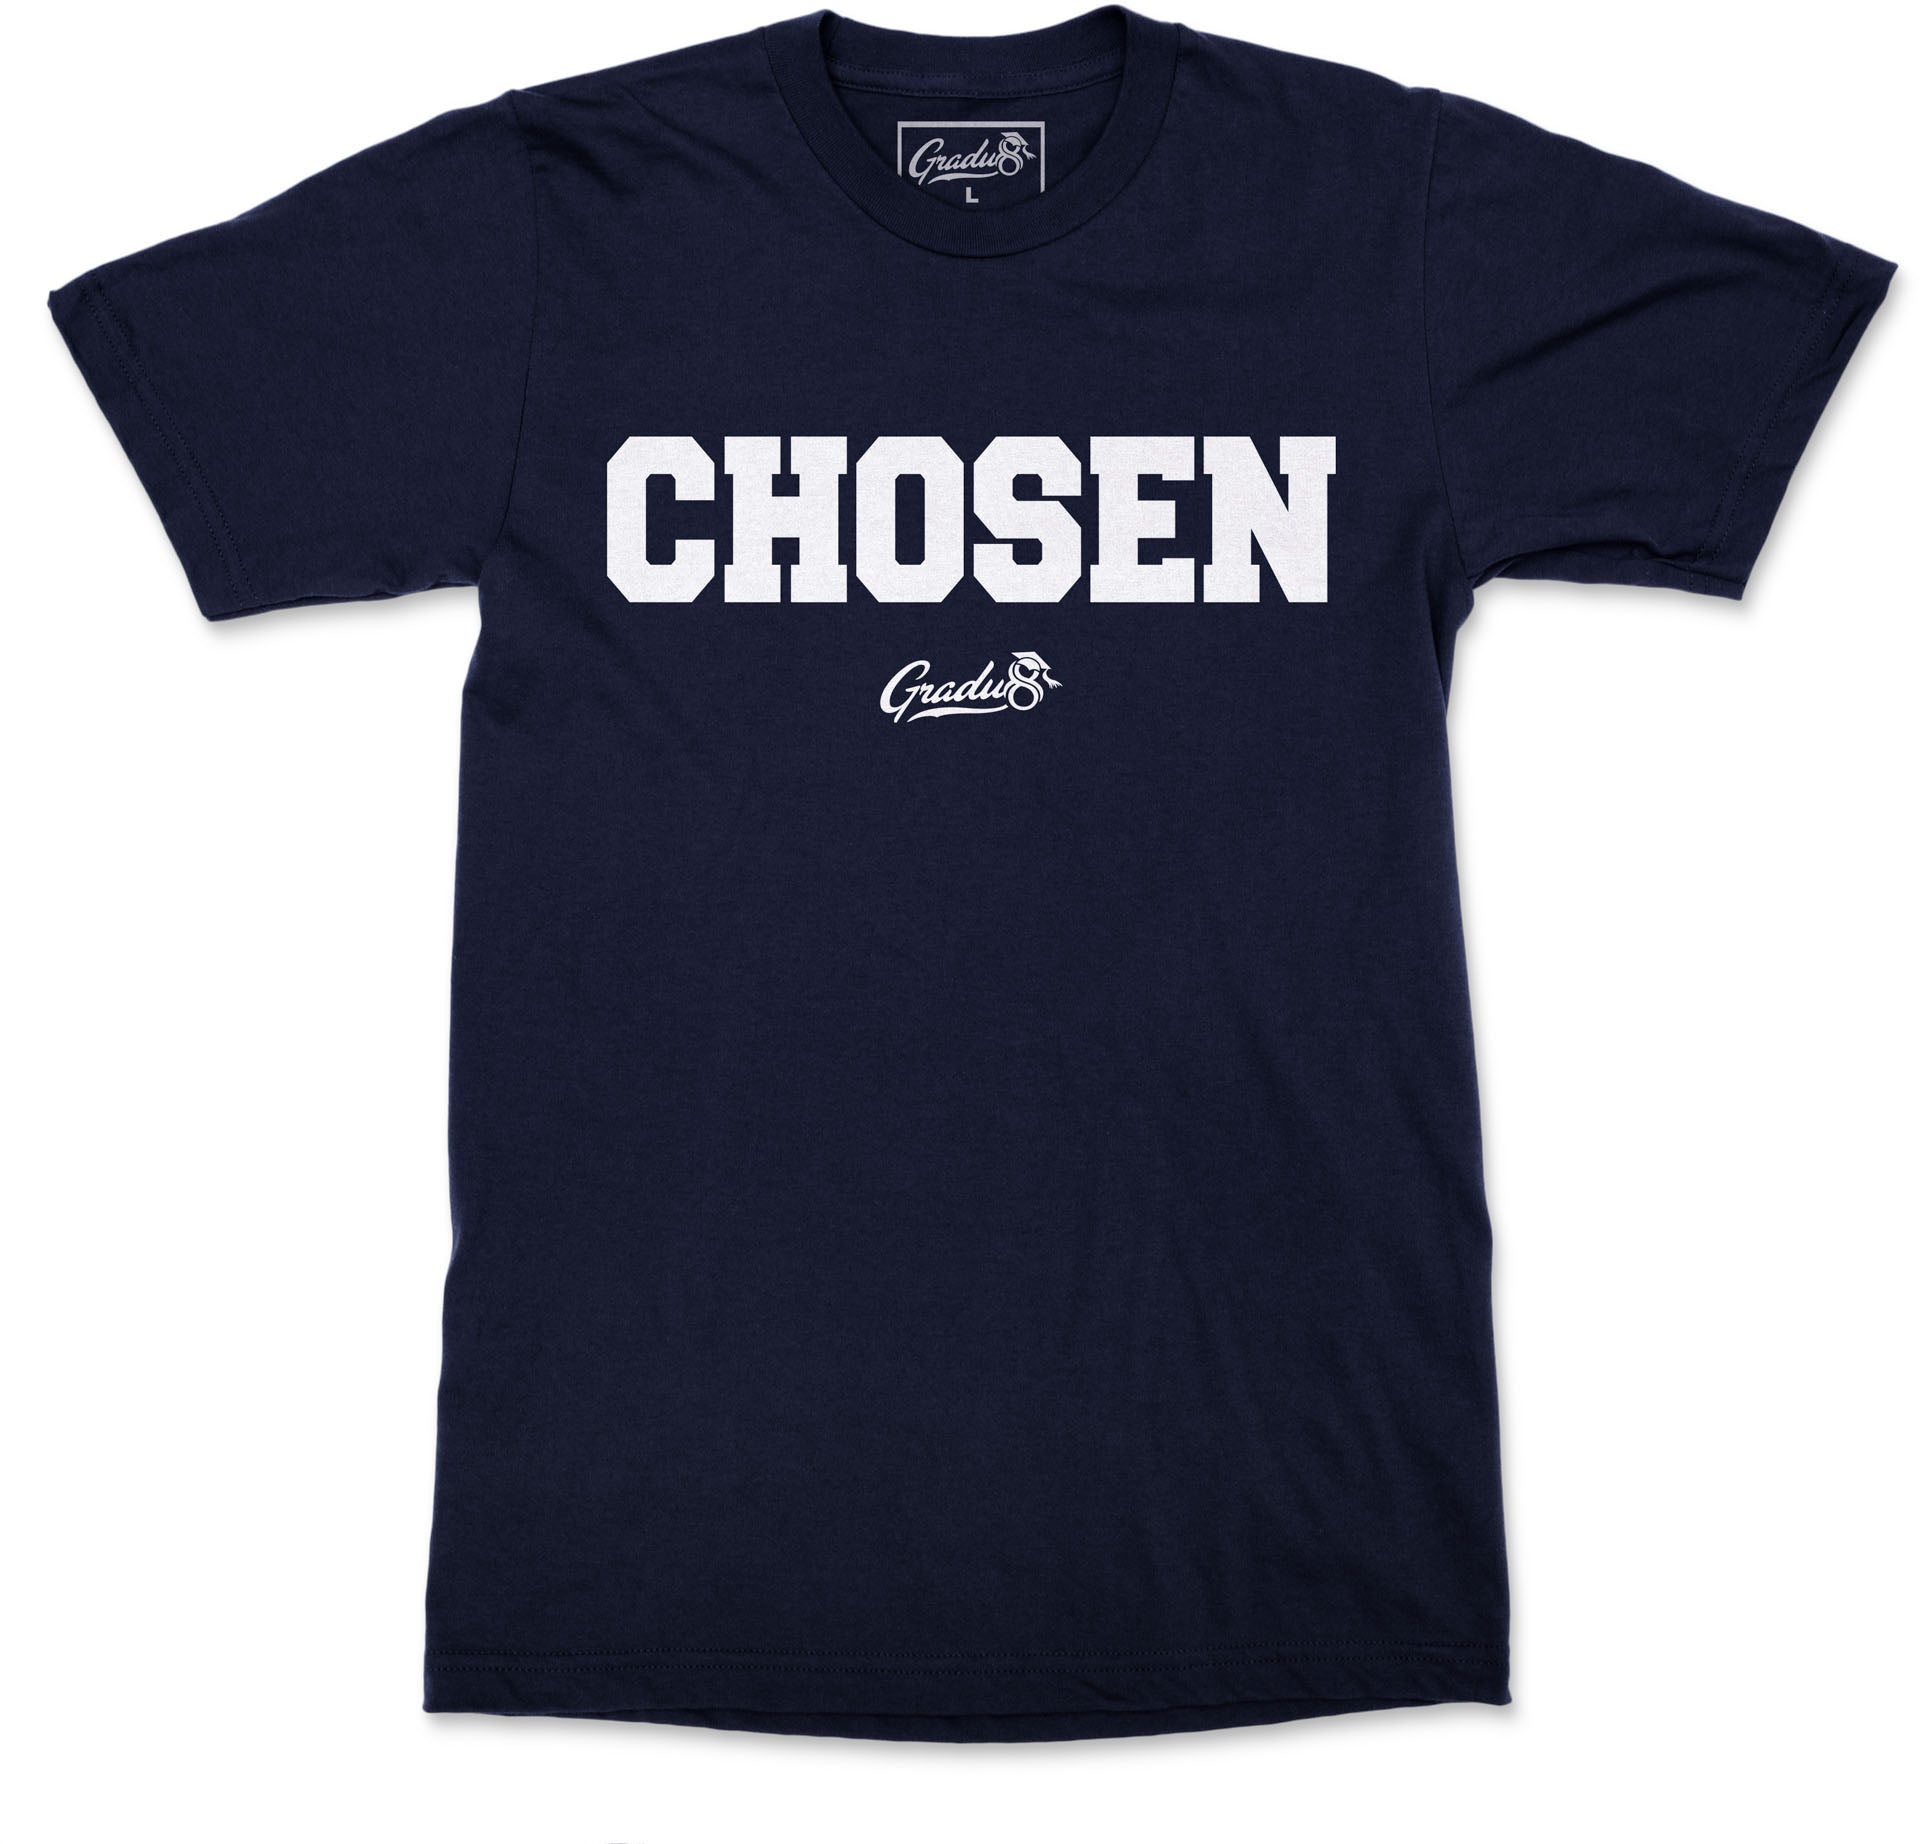 Chosen T-shirt - Navy Blue